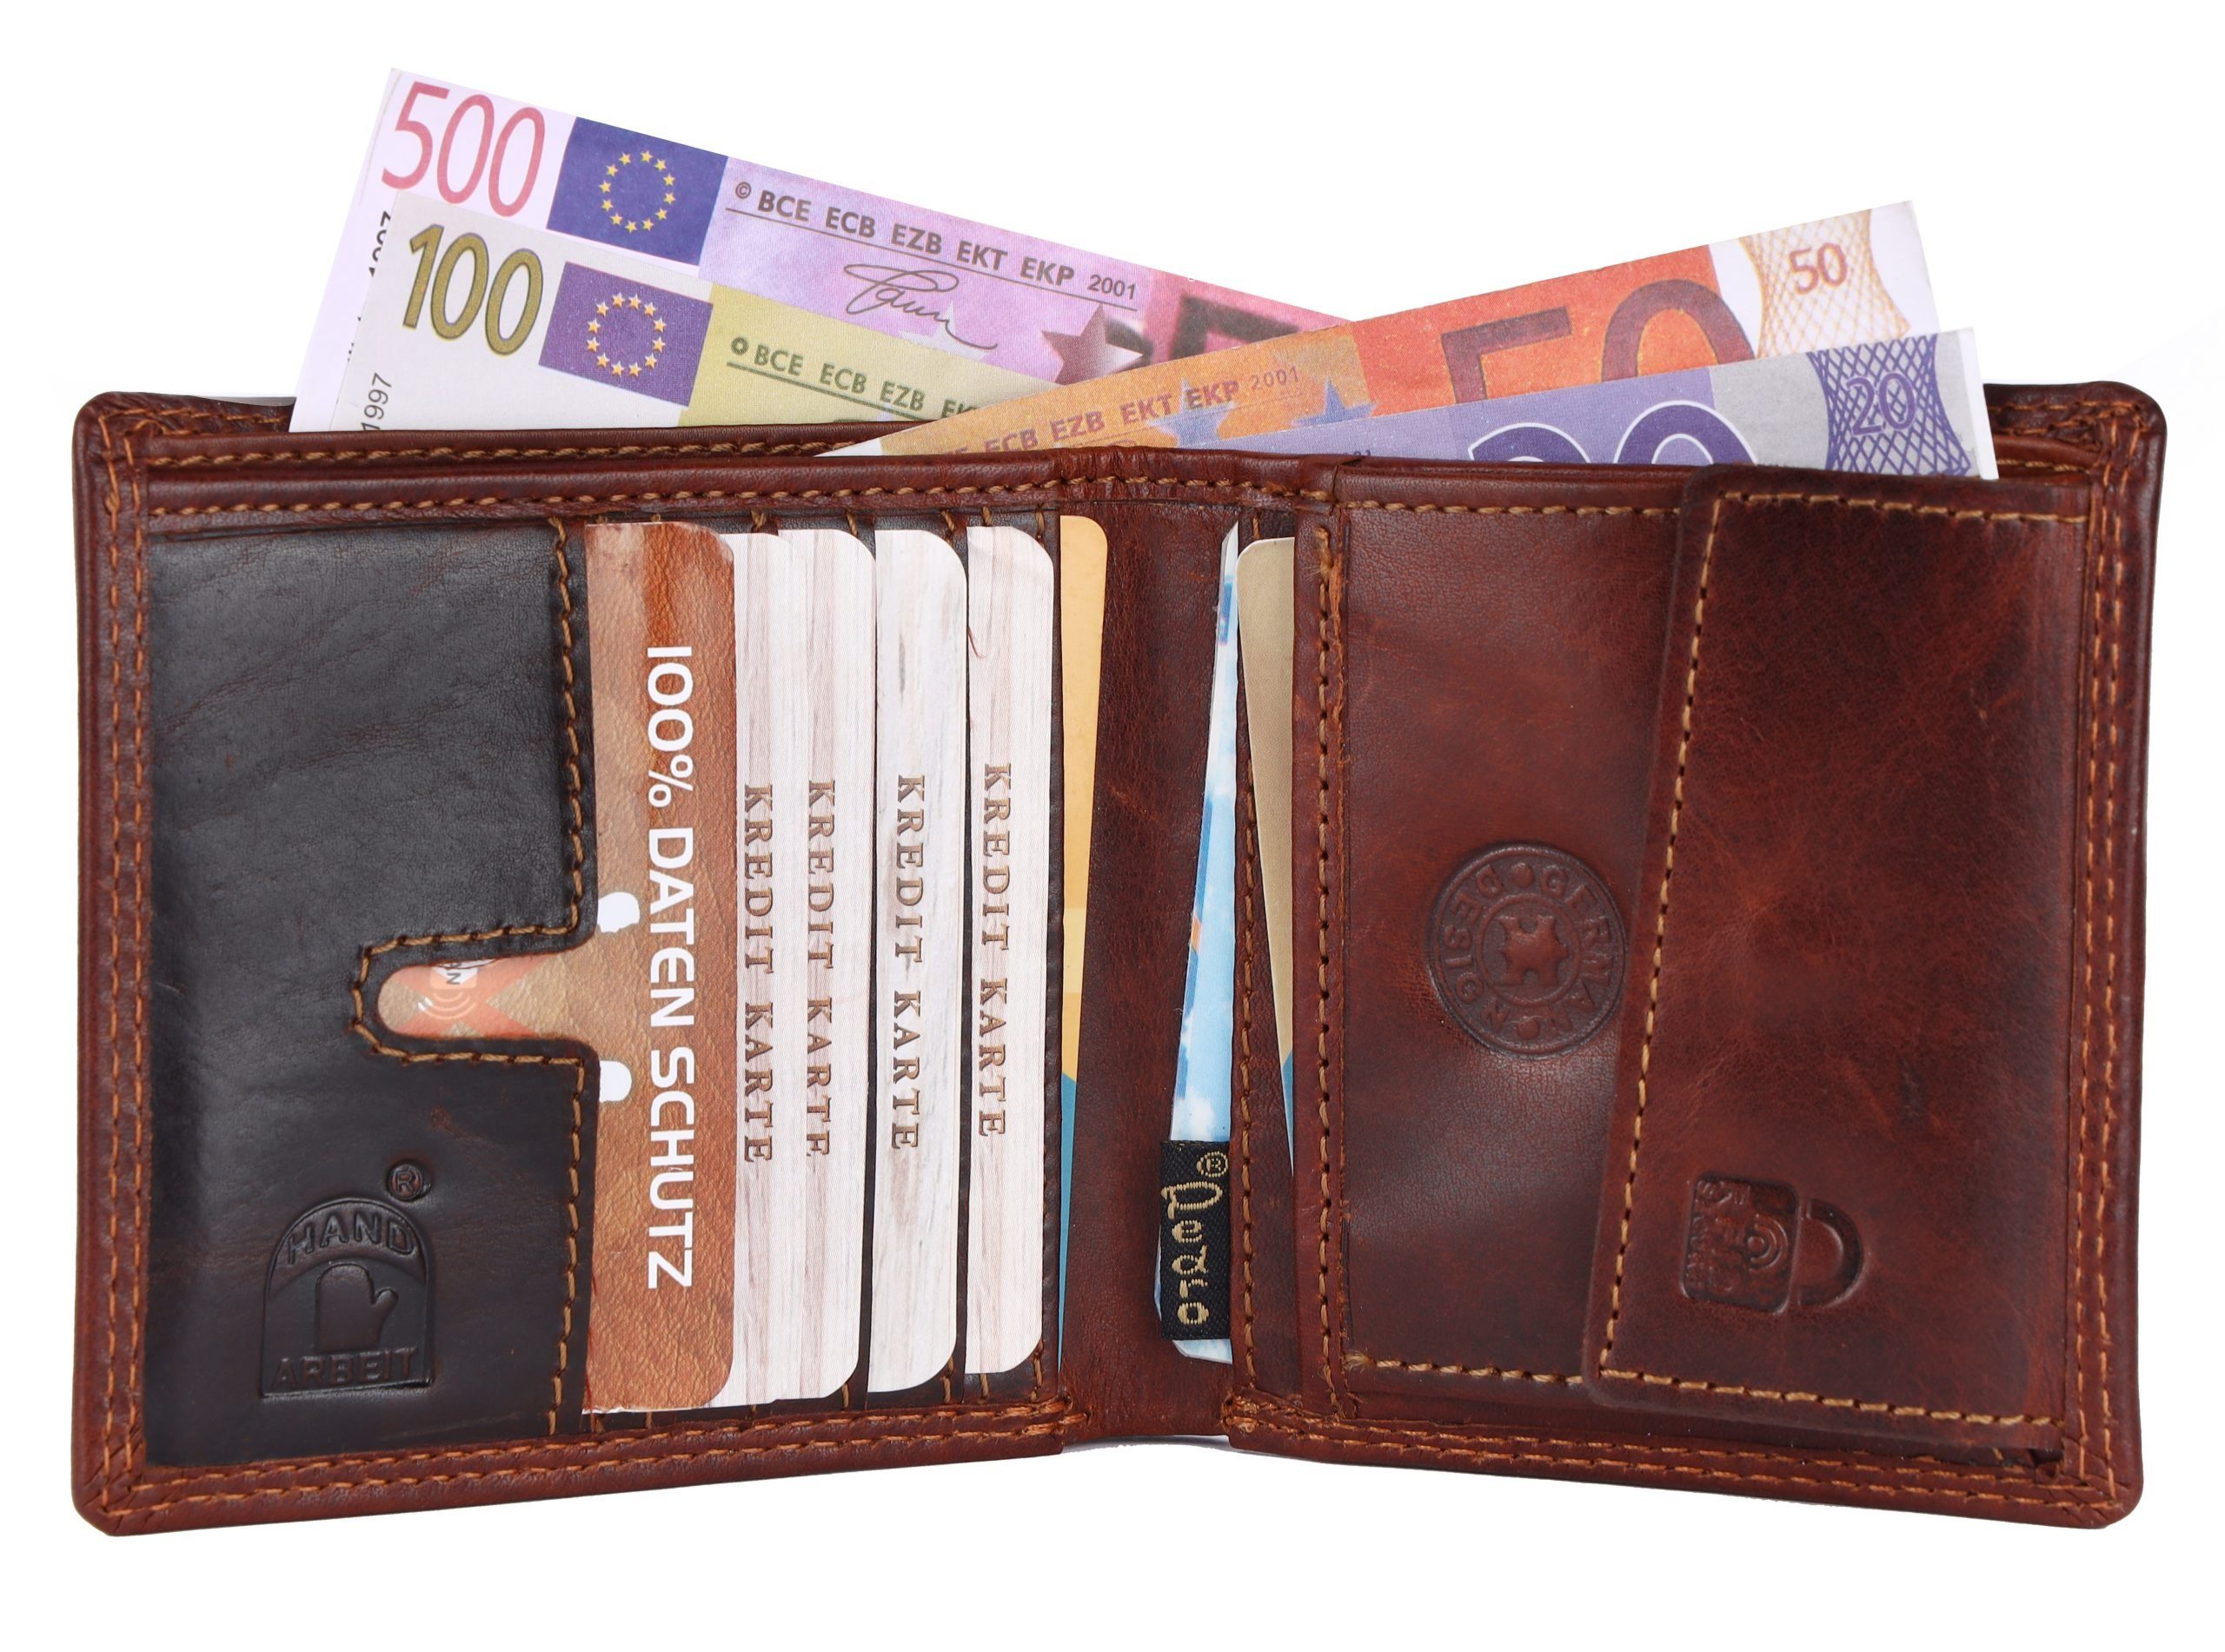 Kreditkartenfächer, RFID Druckknopfverschluss, Portemonnaie Männerbörse, Herren Schutz Münzfach, SHG Brieftasche Geldbeutel Geldbörse Leder Börse